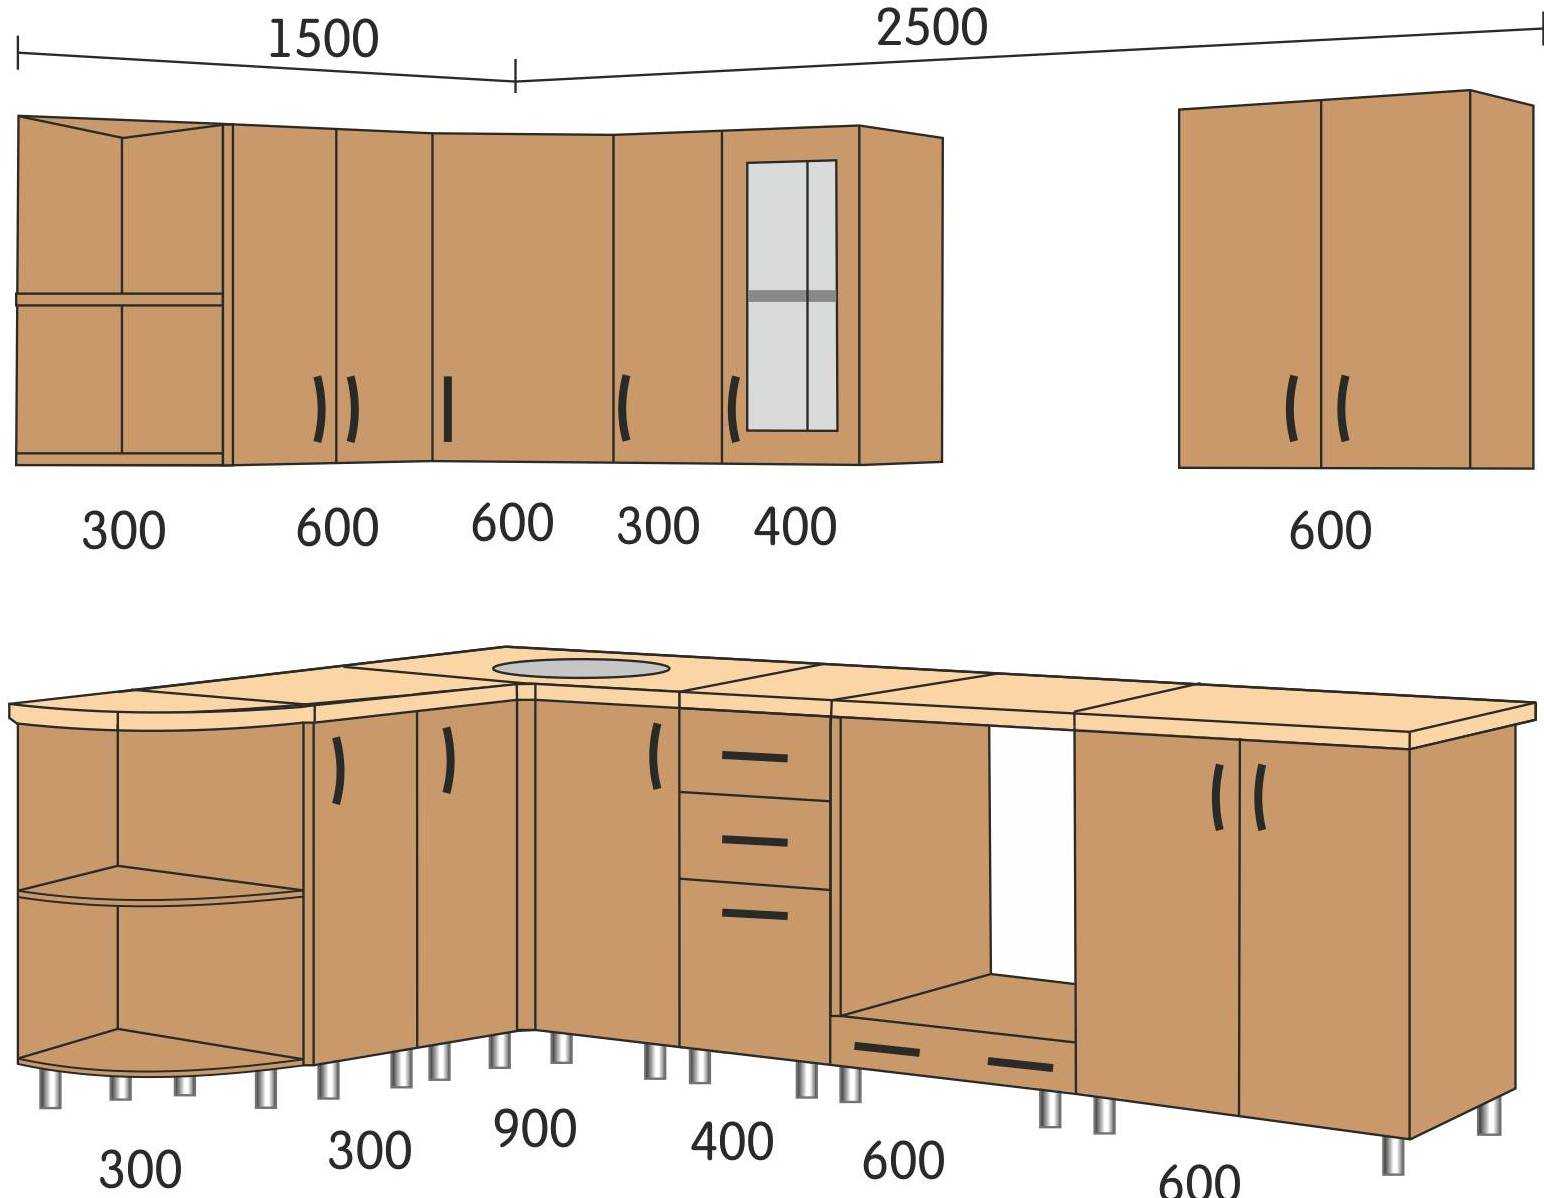 Размеры столешницы для кухни: длина, ширина, толщина